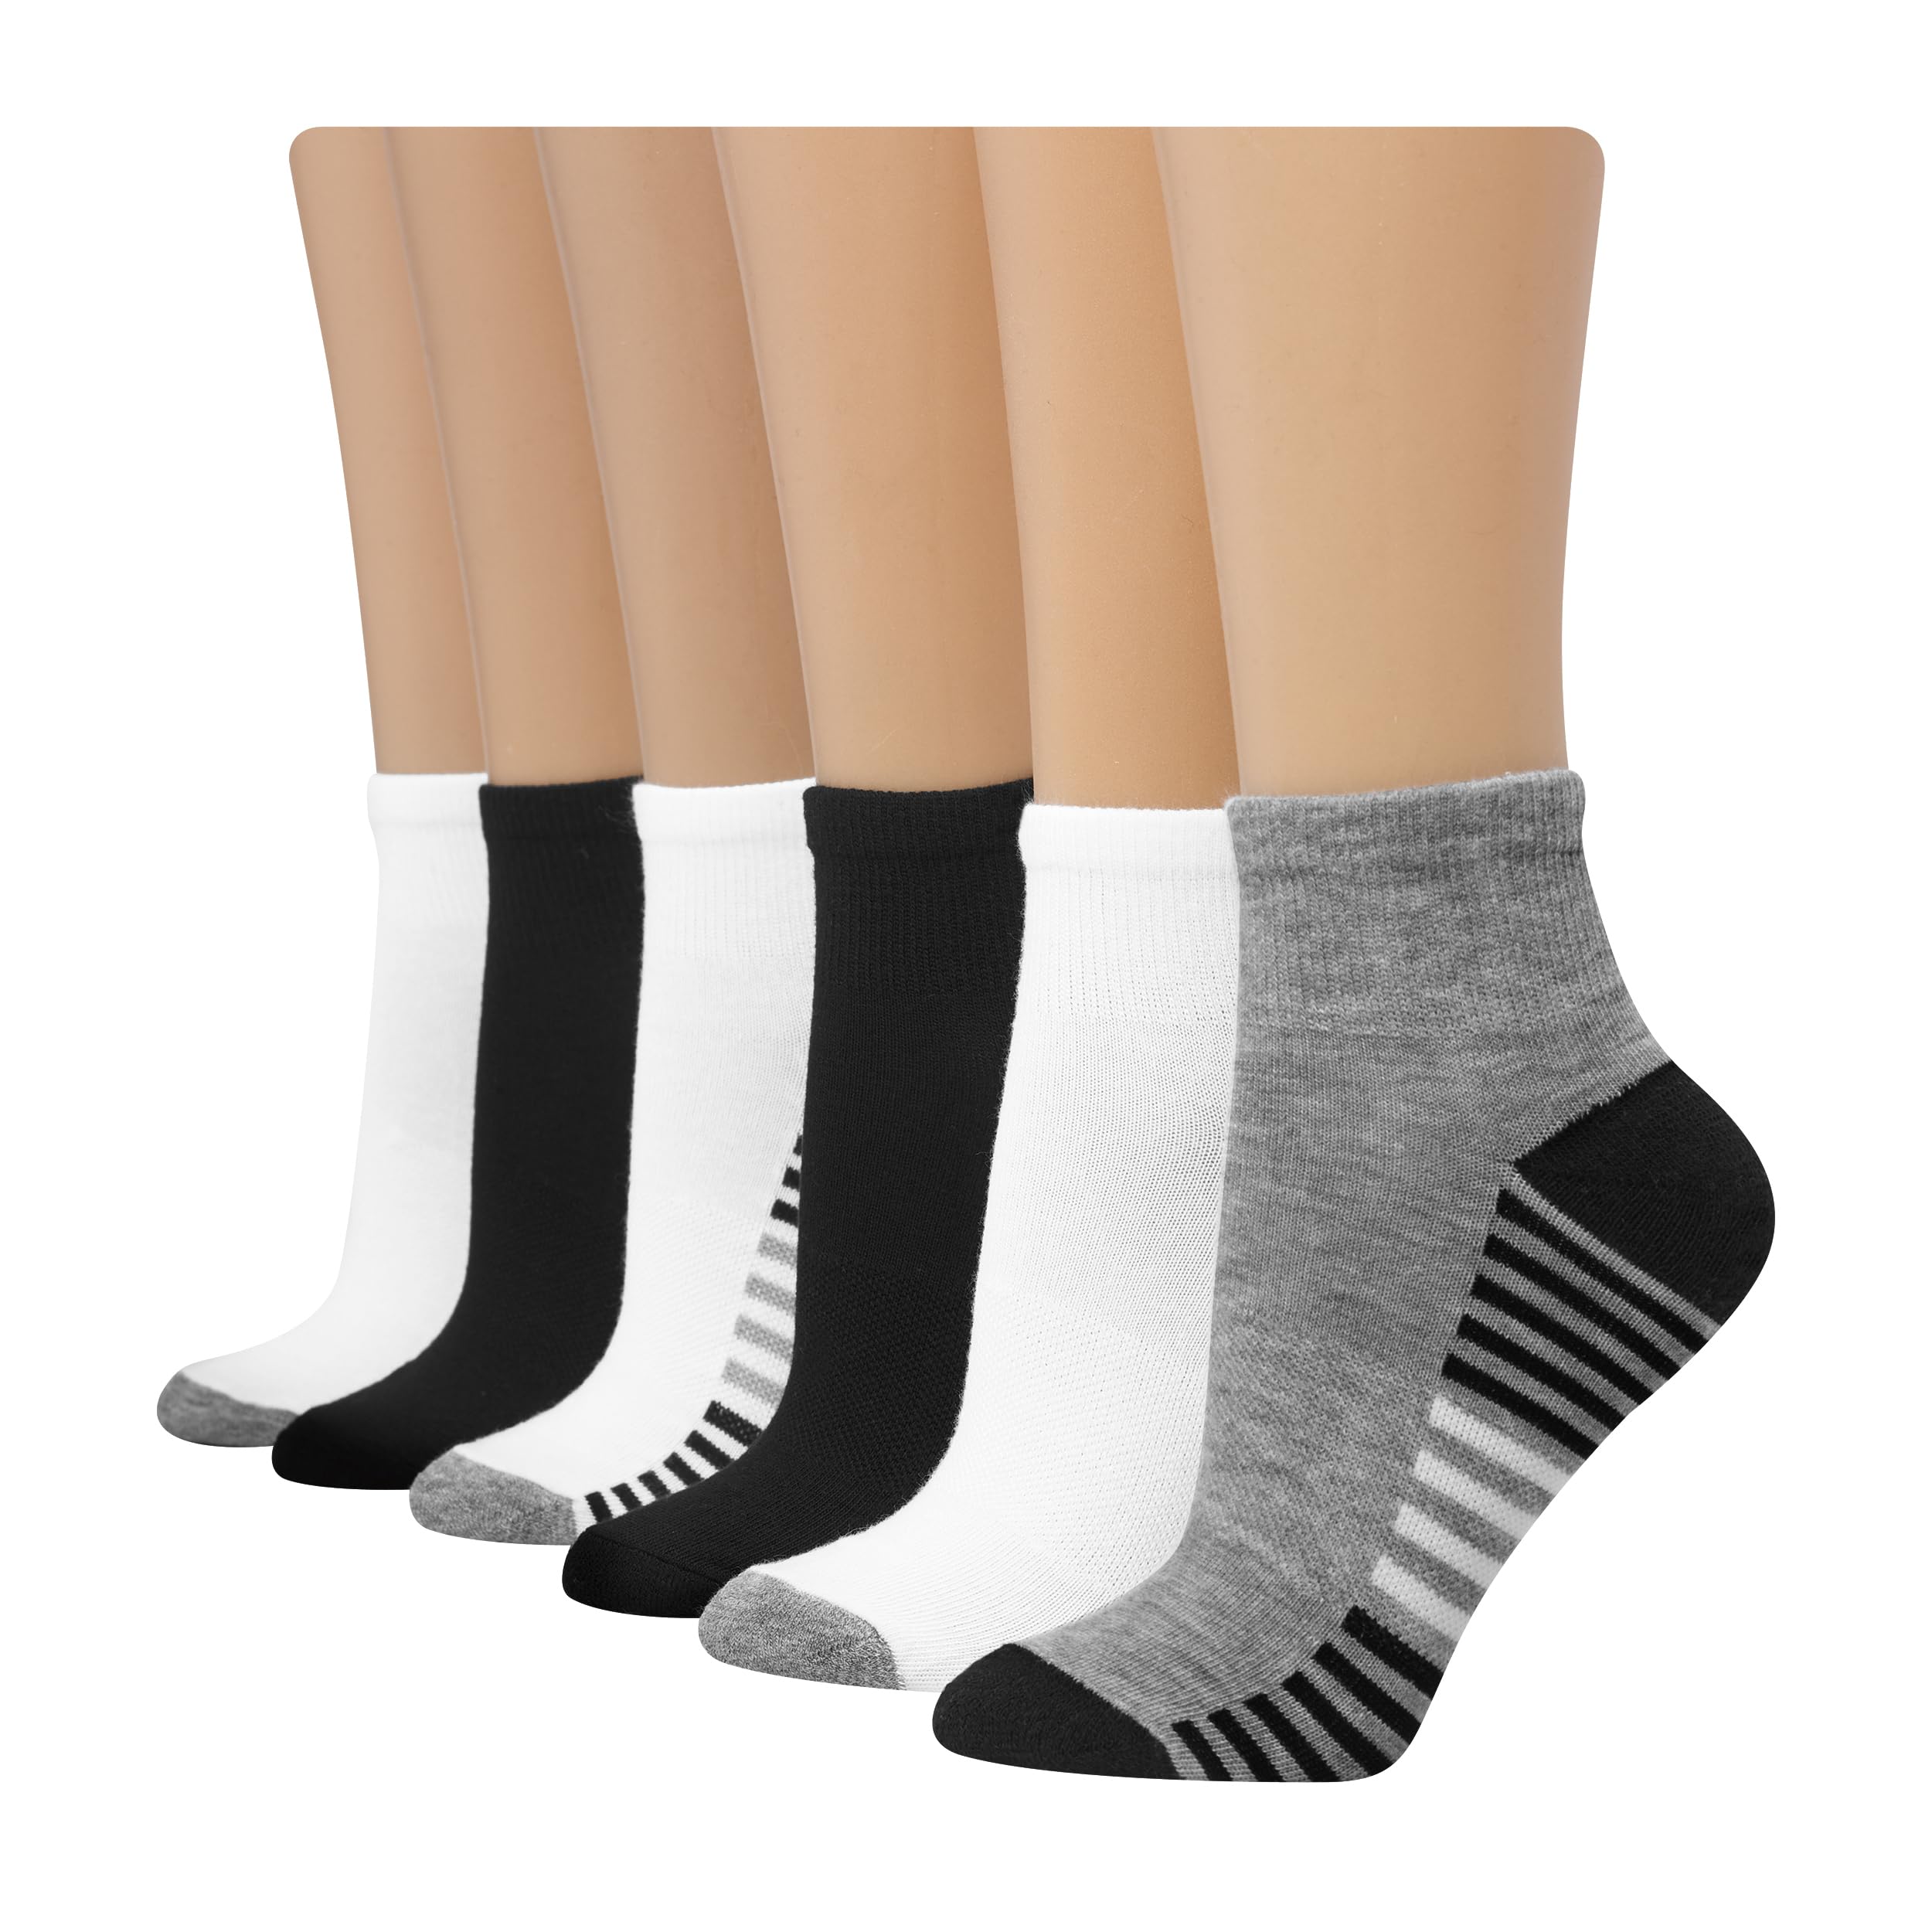 Hanes Women's 6-Pair Comfort Fit Ankle Socks